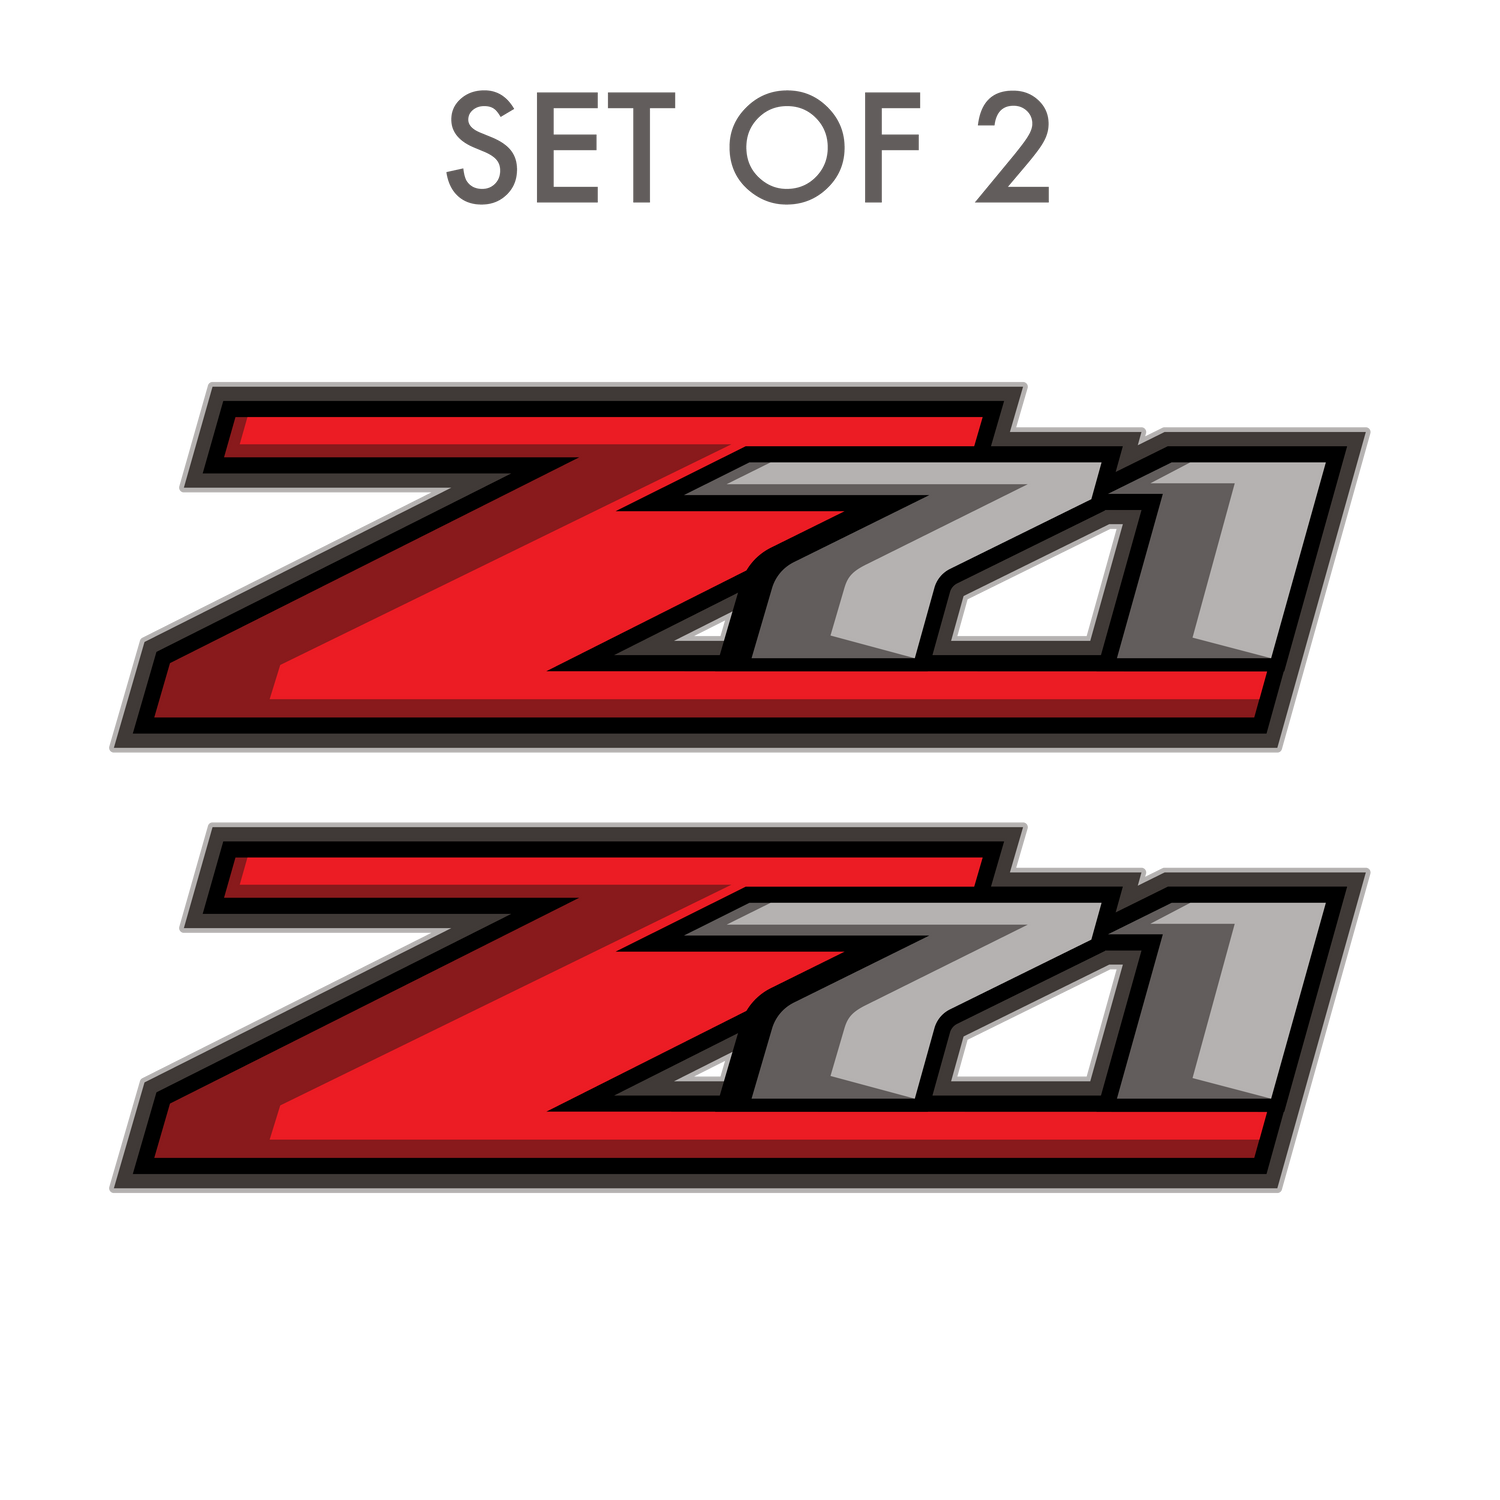 Set of 2: Z71 decal for 2017-2019 Chevrolet Silverado GMC Sierra pickup truck bedside - US Rallystripes